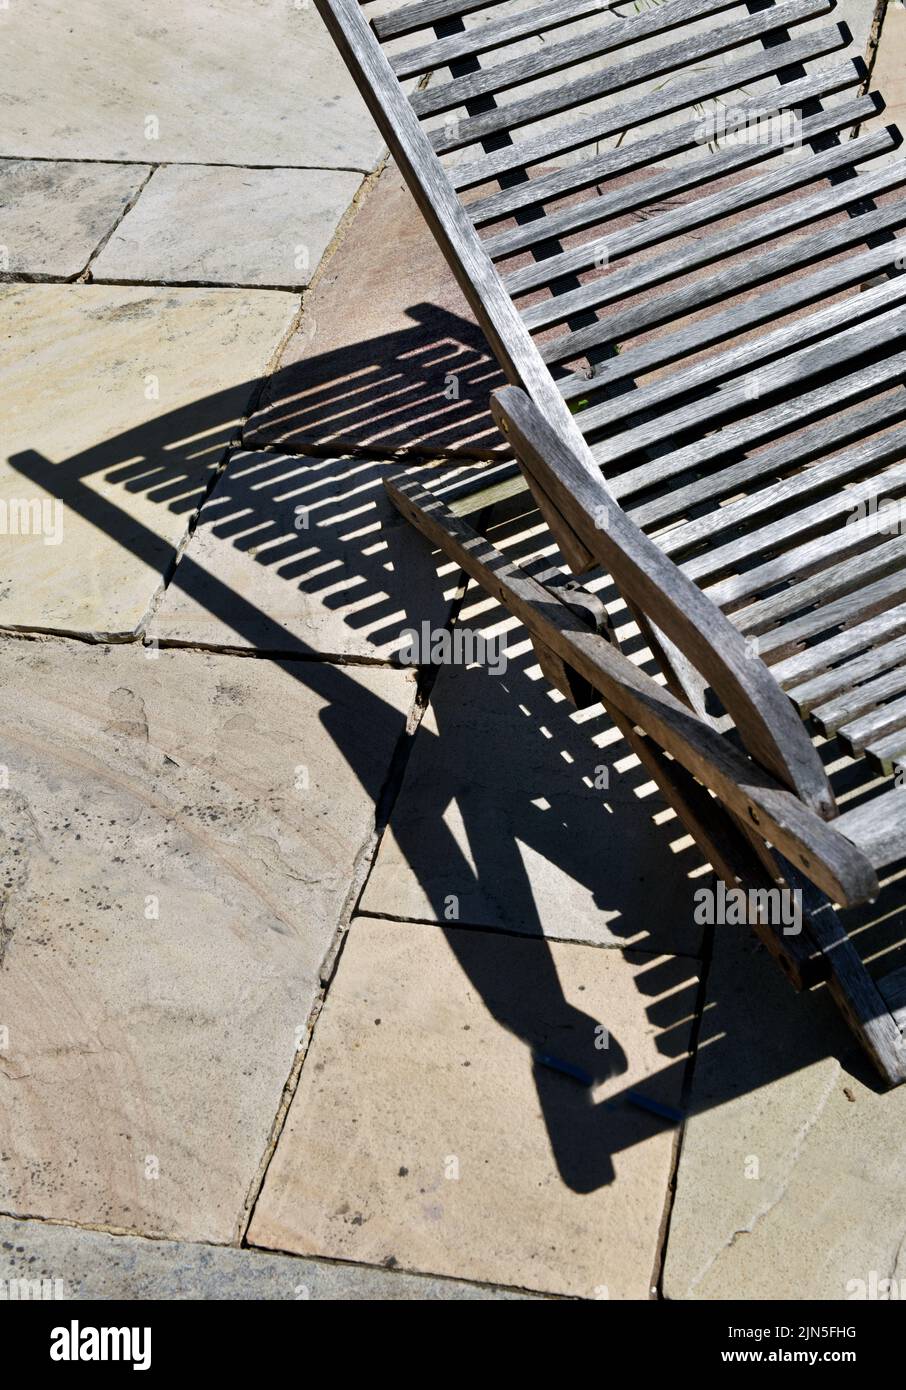 una tumbona de madera bien desgastada que proyecta una fuerte sombra sobre las losas de pavimentación Foto de stock